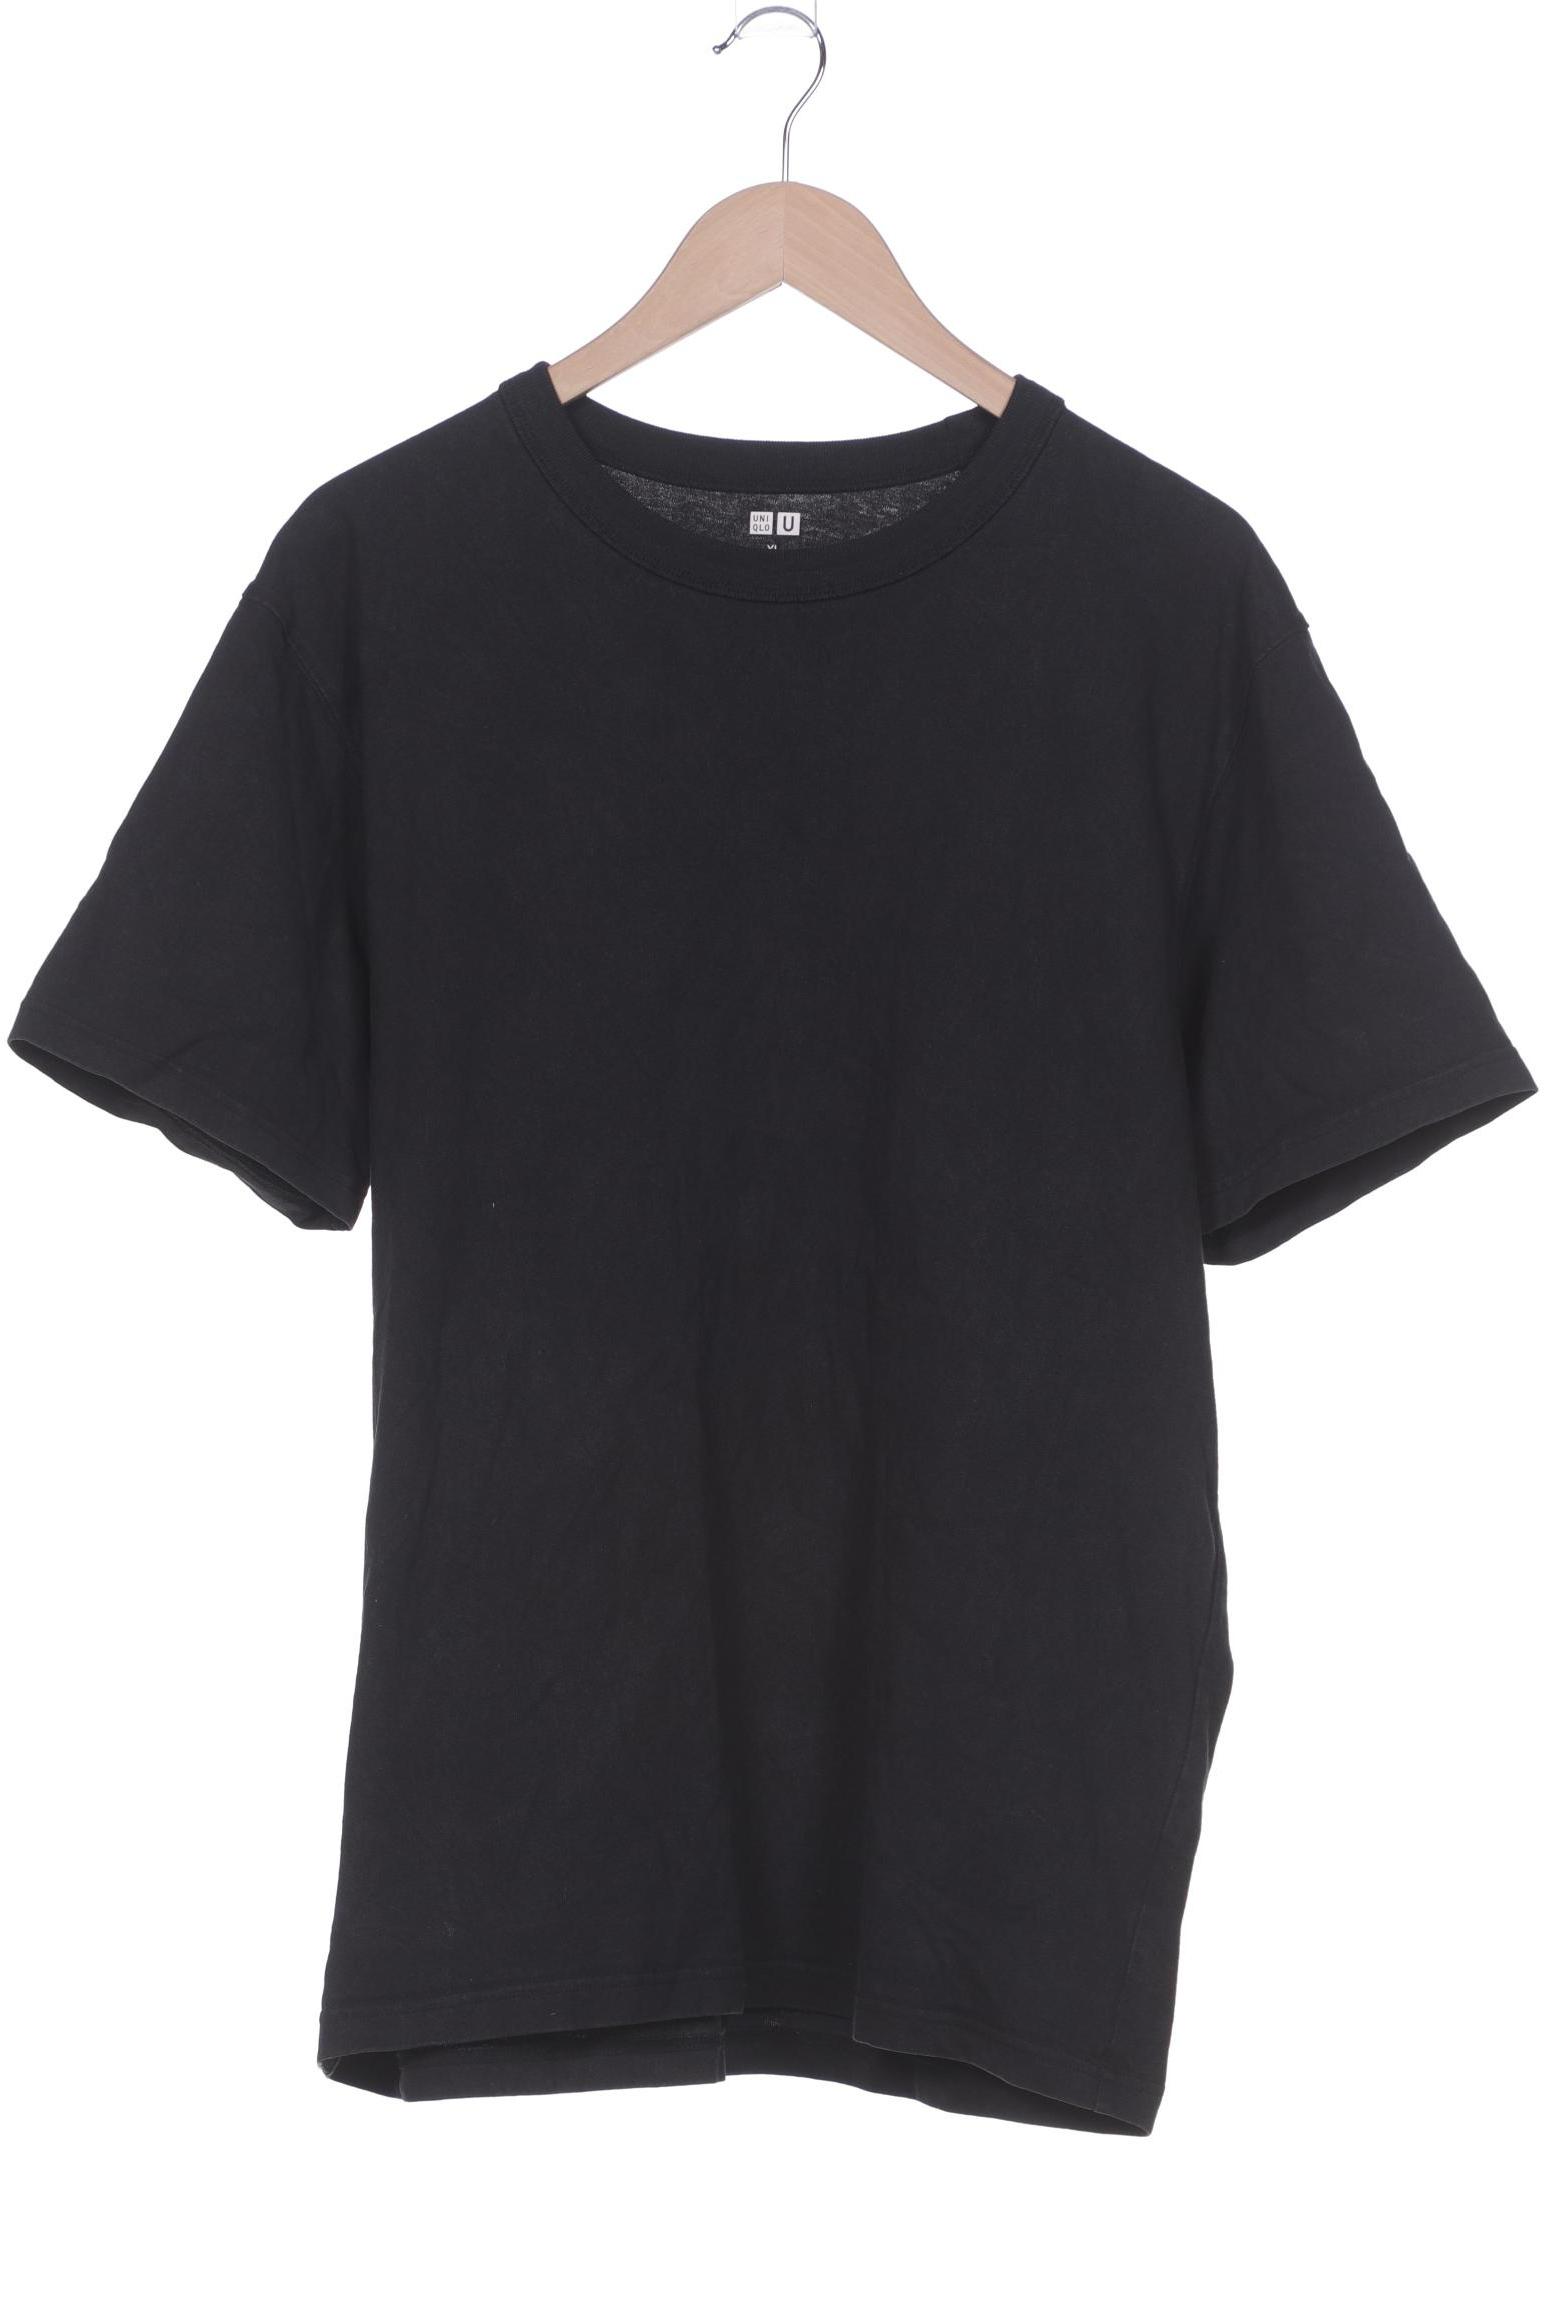 uniqlo Herren T-Shirt, schwarz, Gr. 54 von uniqlo